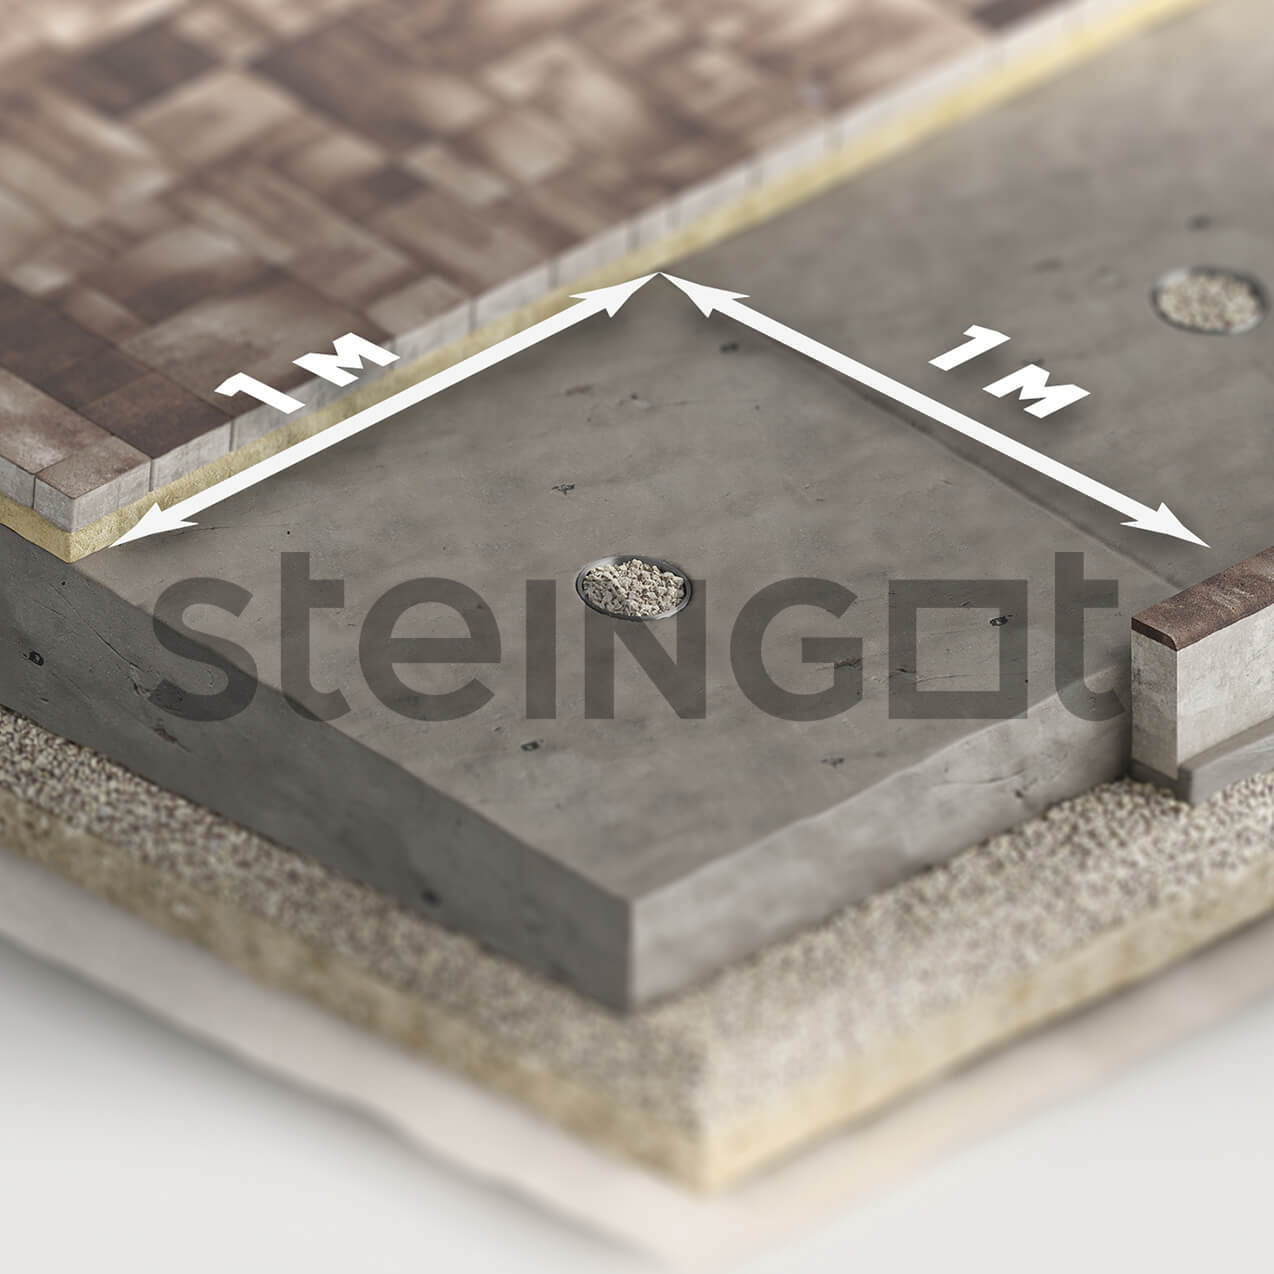 Steingot - укладка на бетонное оcнование влагоприемник общий вид